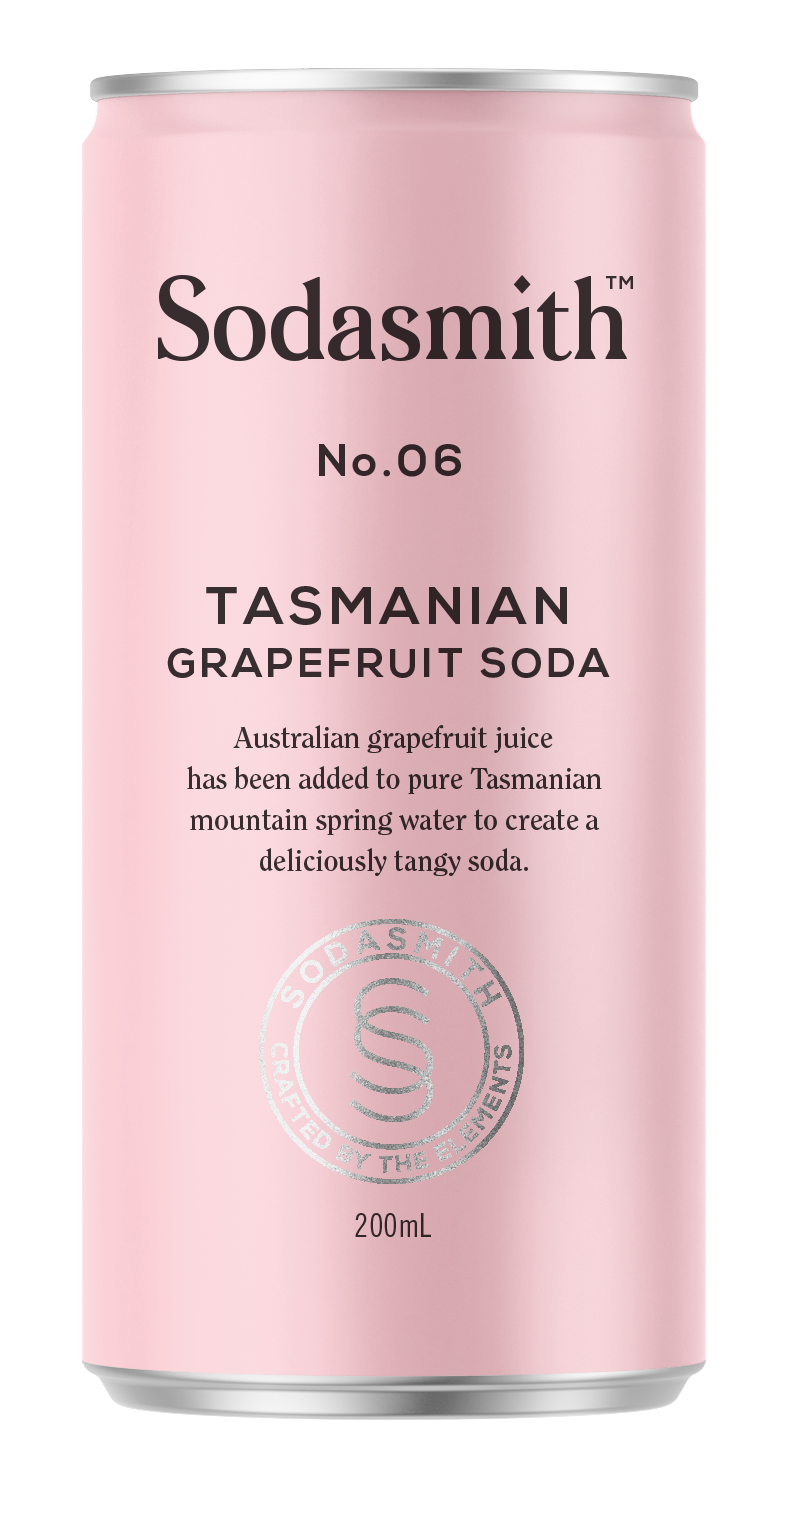 No. 06 Grapefruit Soda